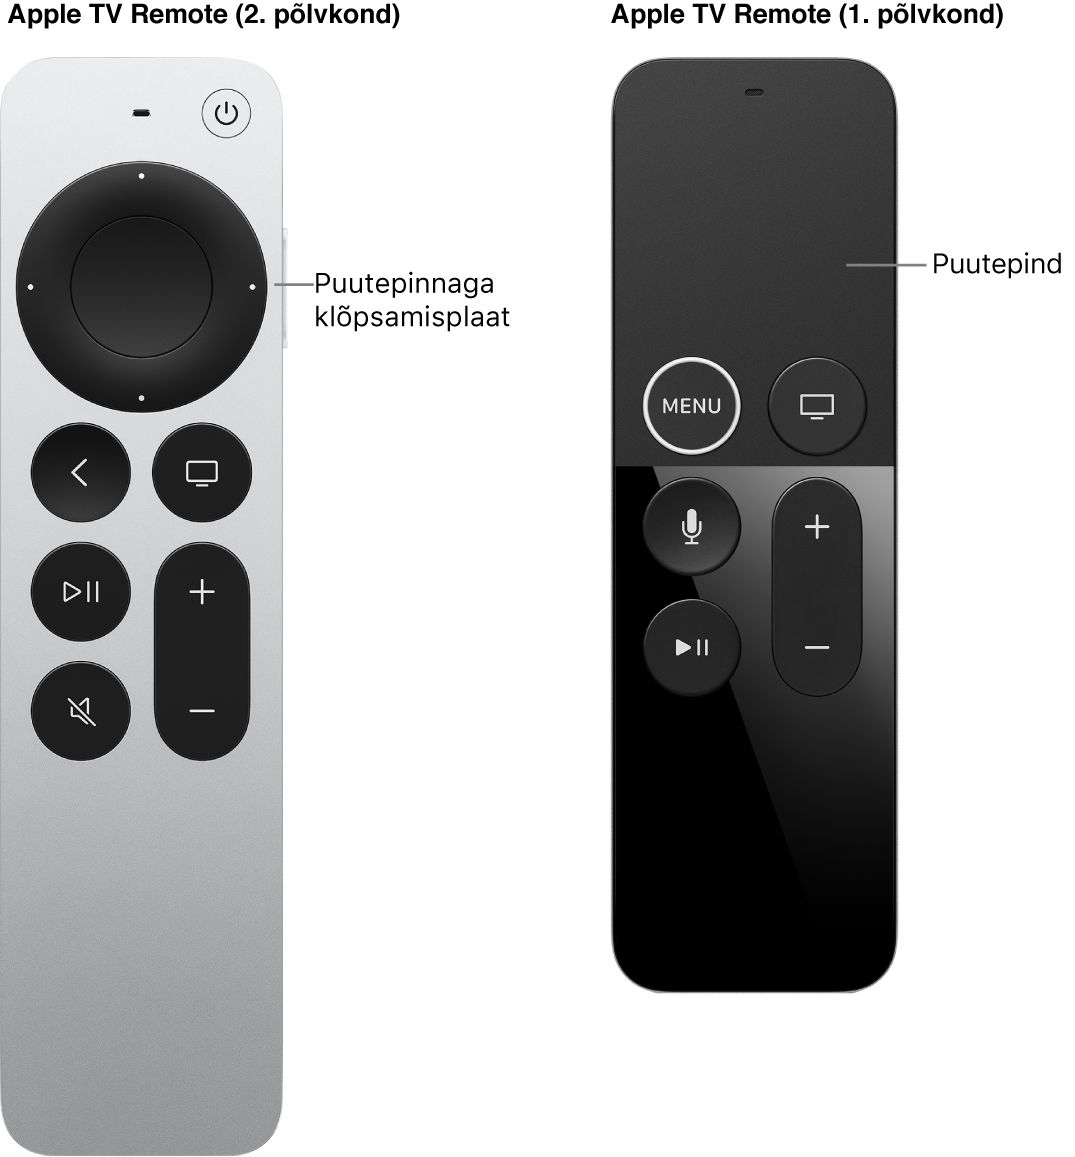 Apple TV Remote (2. põlvkond) klõpsamisplaadiga ning Apple TV Remote (1. põlvkond) puutepinnaga.